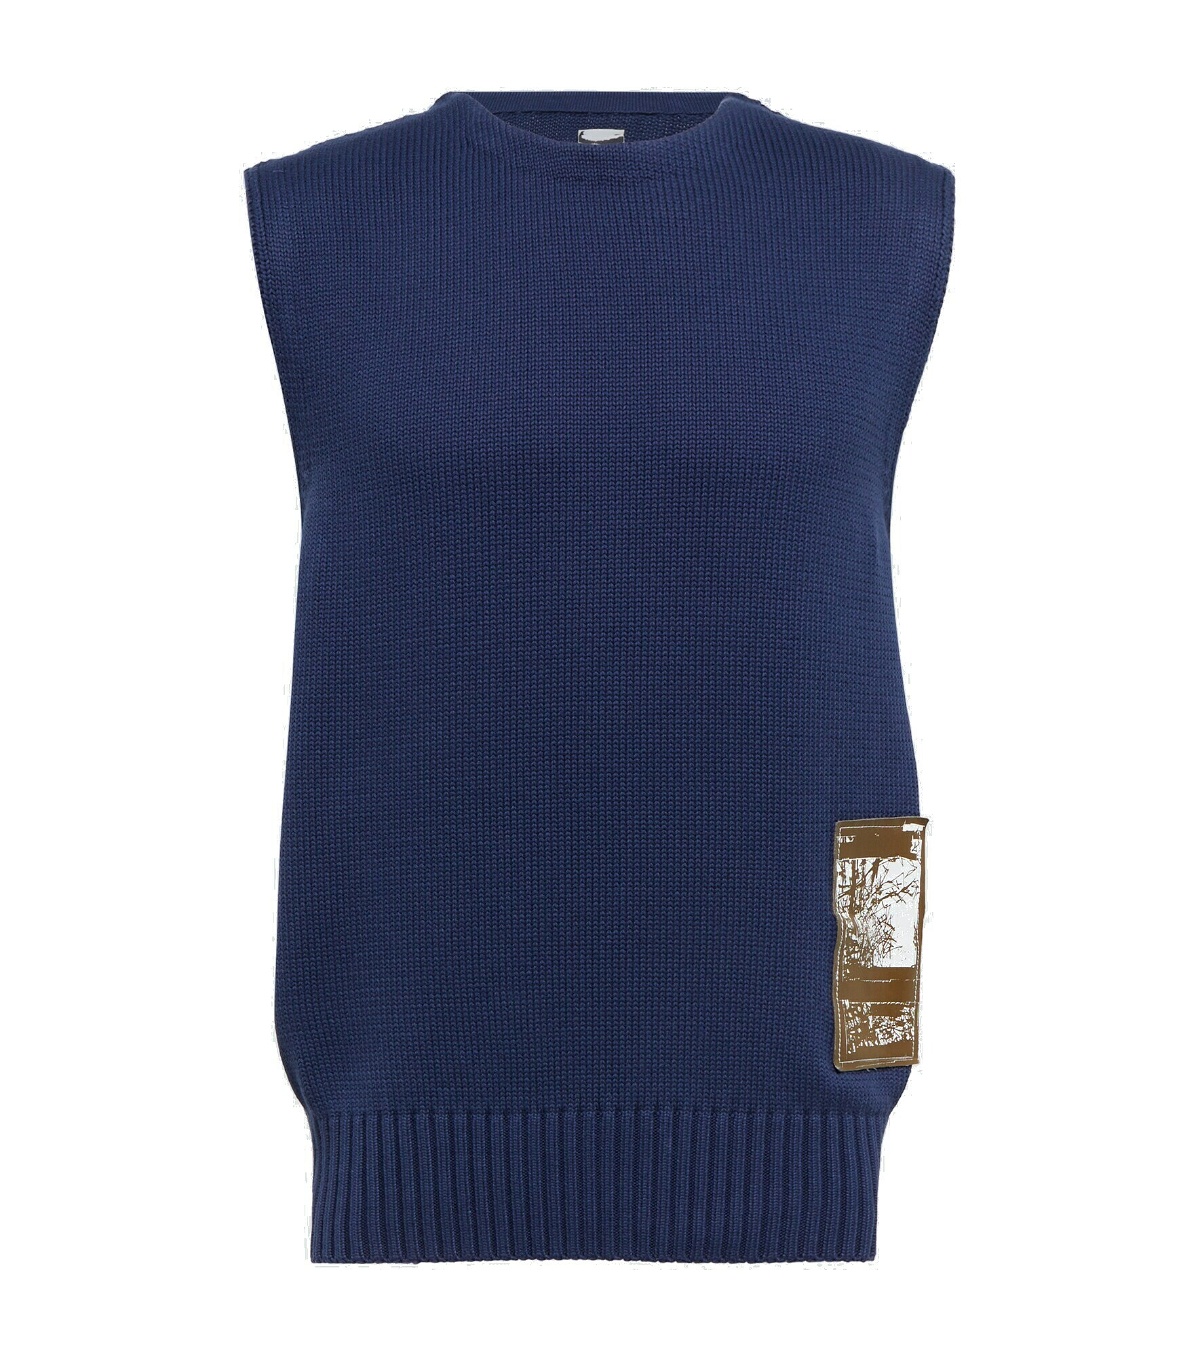 GR10K - Embroidered cotton sweater vest GR10K